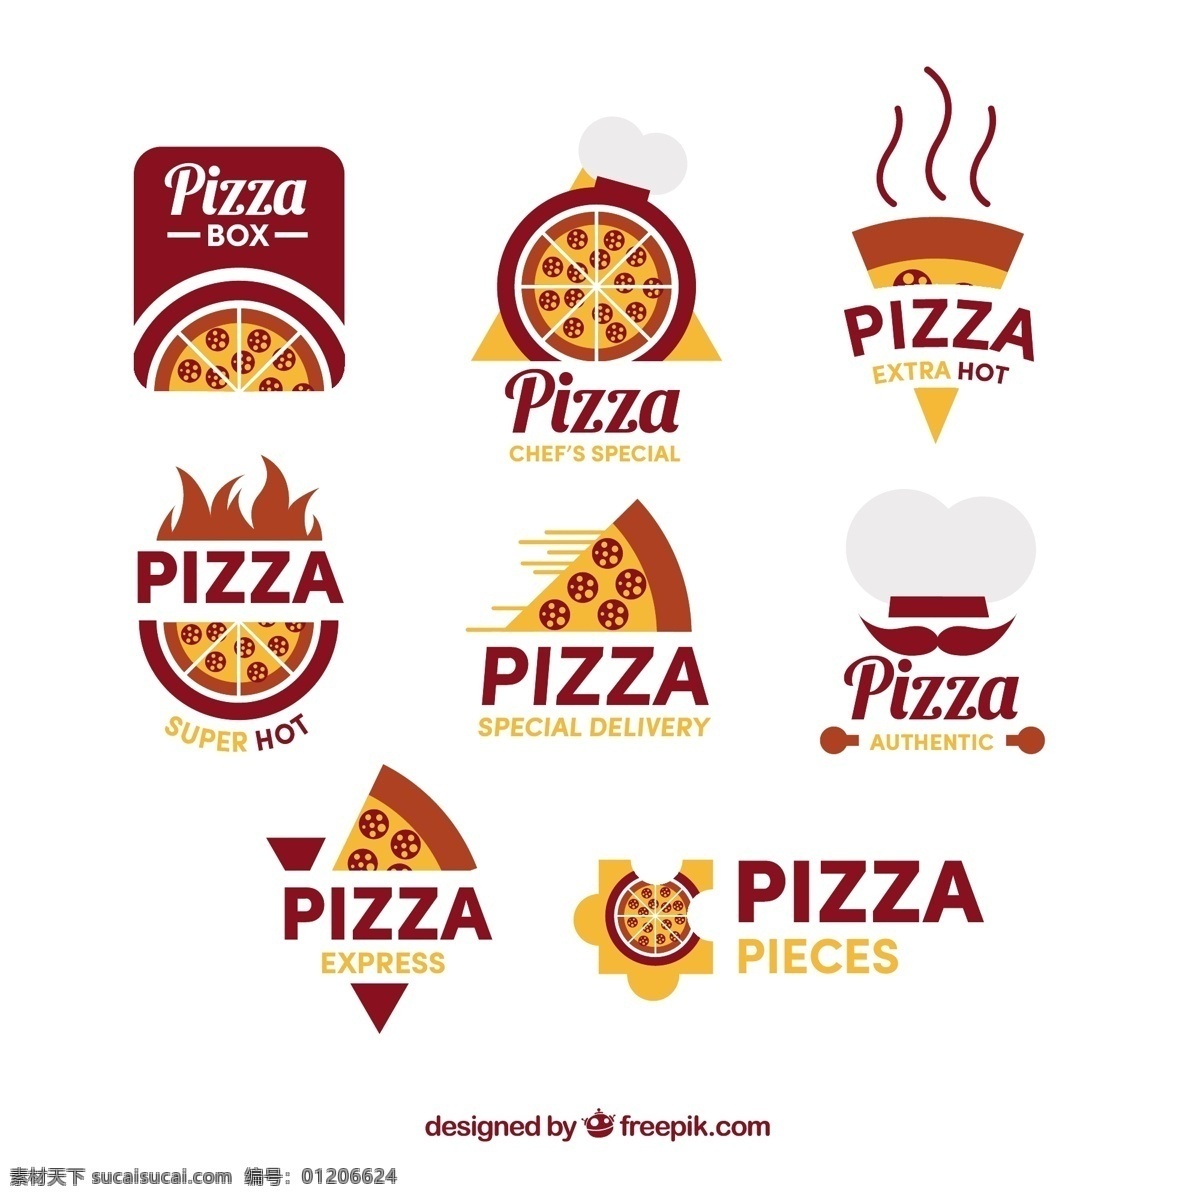 对披萨的徽标 食物 菜单 餐馆 厨房 比萨饼 桌子 厨师 送货 蔬菜 标识 烹饪 奶酪 晚餐 吃 意大利 番茄 午餐 食谱